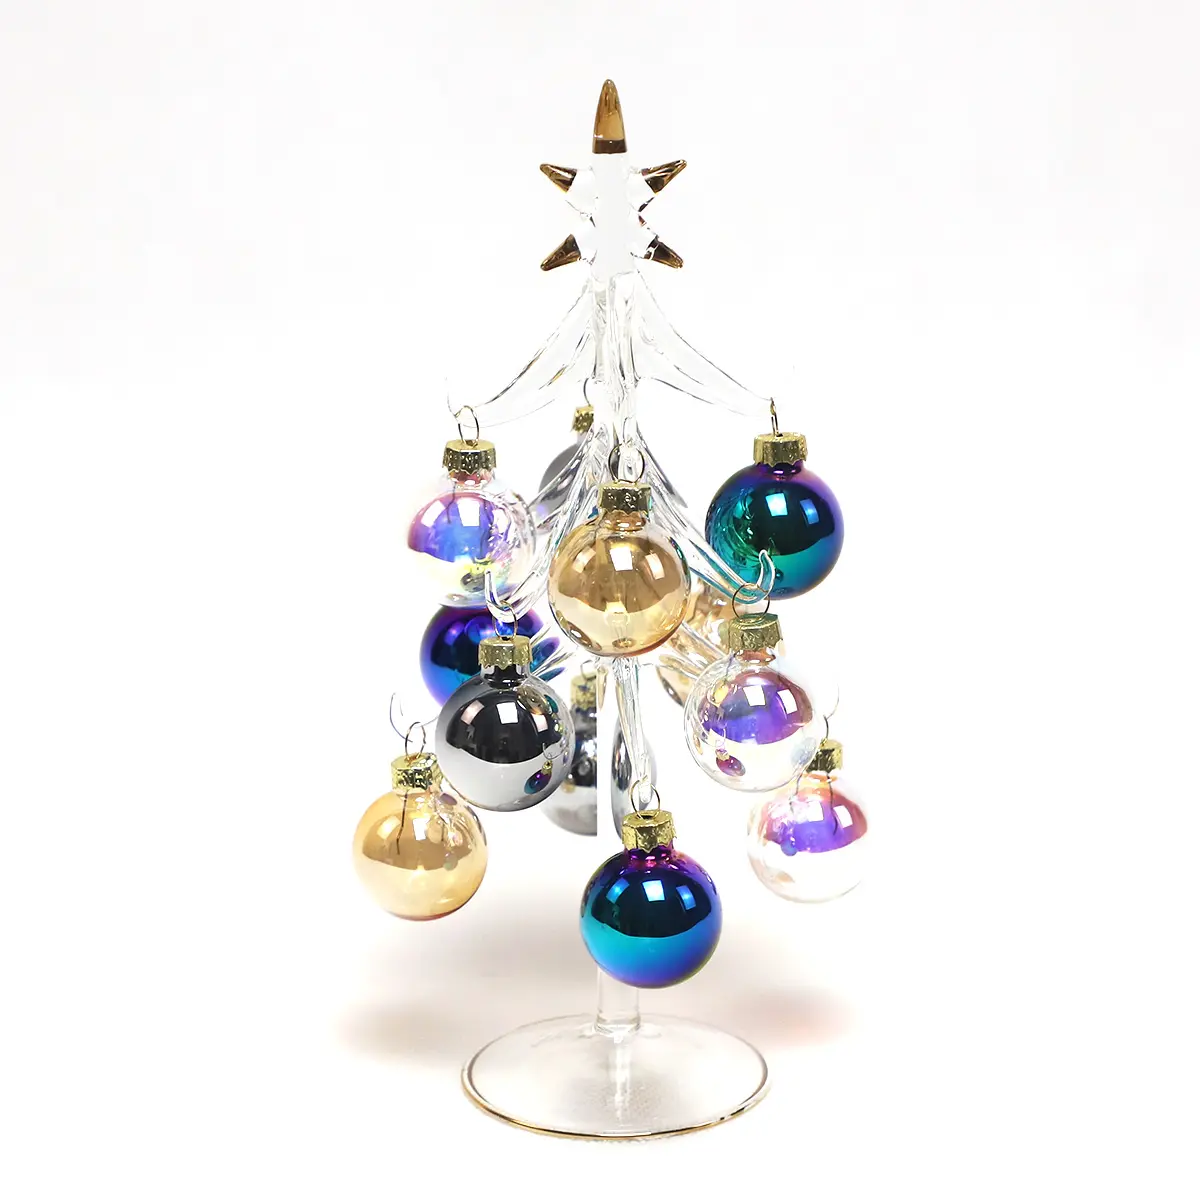 زخارف زجاجية دقيقة قابلة للتبديل ، حامل فاخر من الزجاج والصنوبر وشجرة عيد الميلاد ، للبيع ، هدية لديكور المنزل